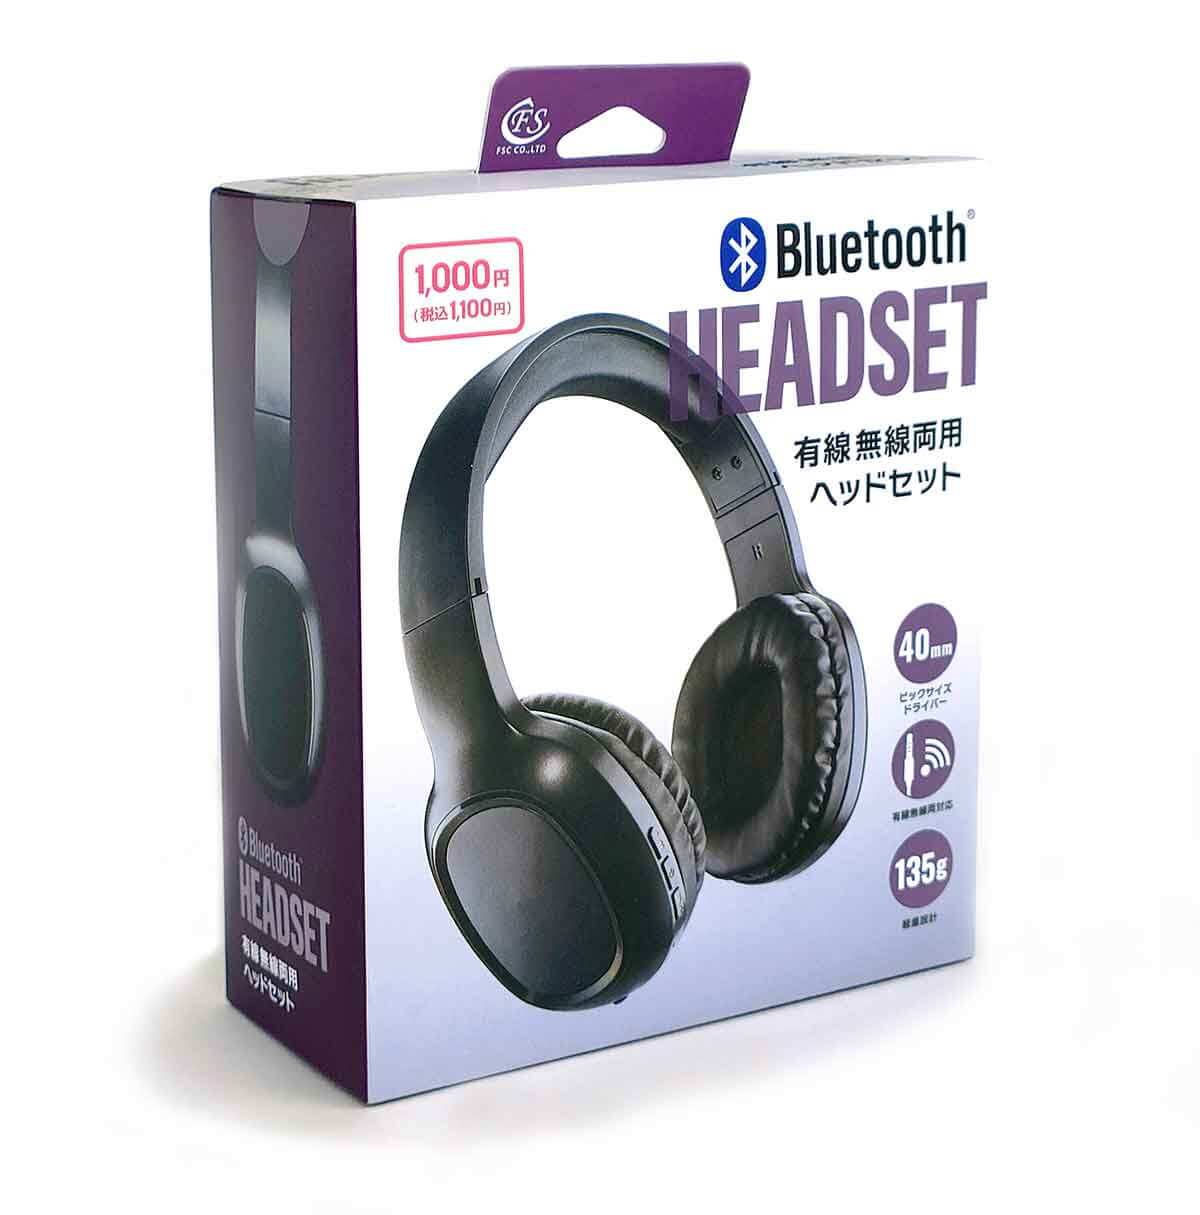 ダイソー「Bluetooth ヘッドセット」1